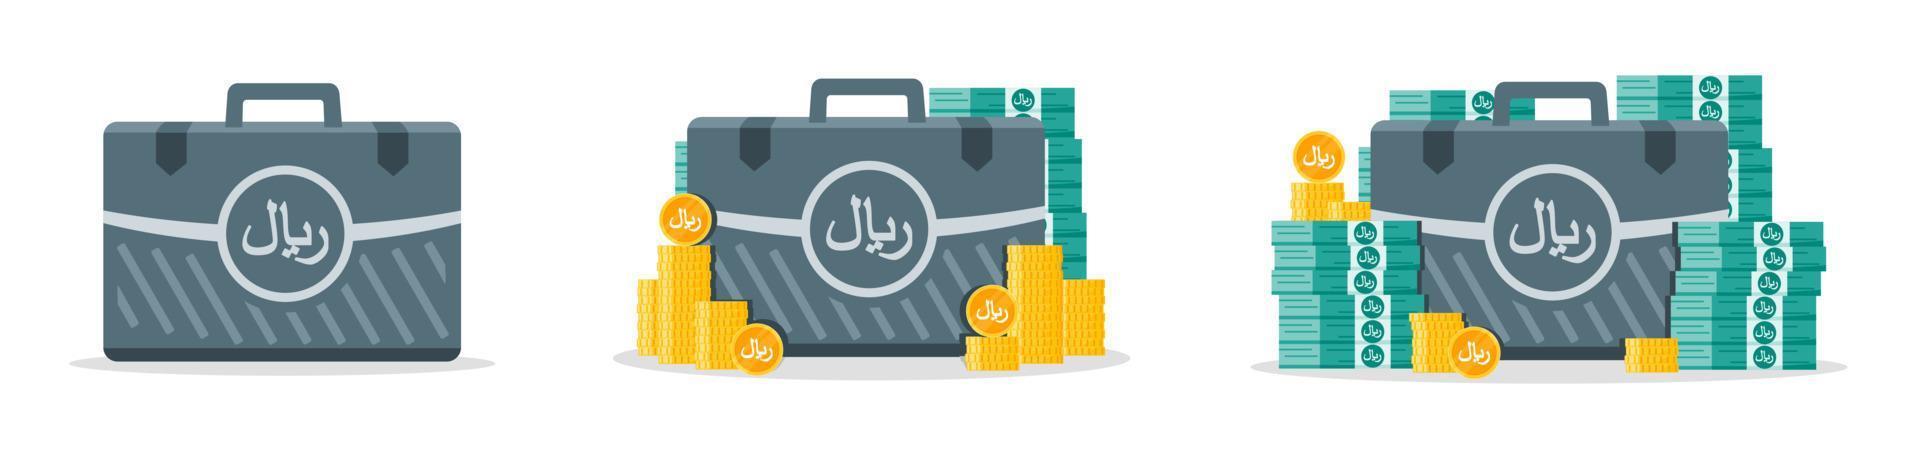 ícones de caixa de dinheiro do rial saudita vetor